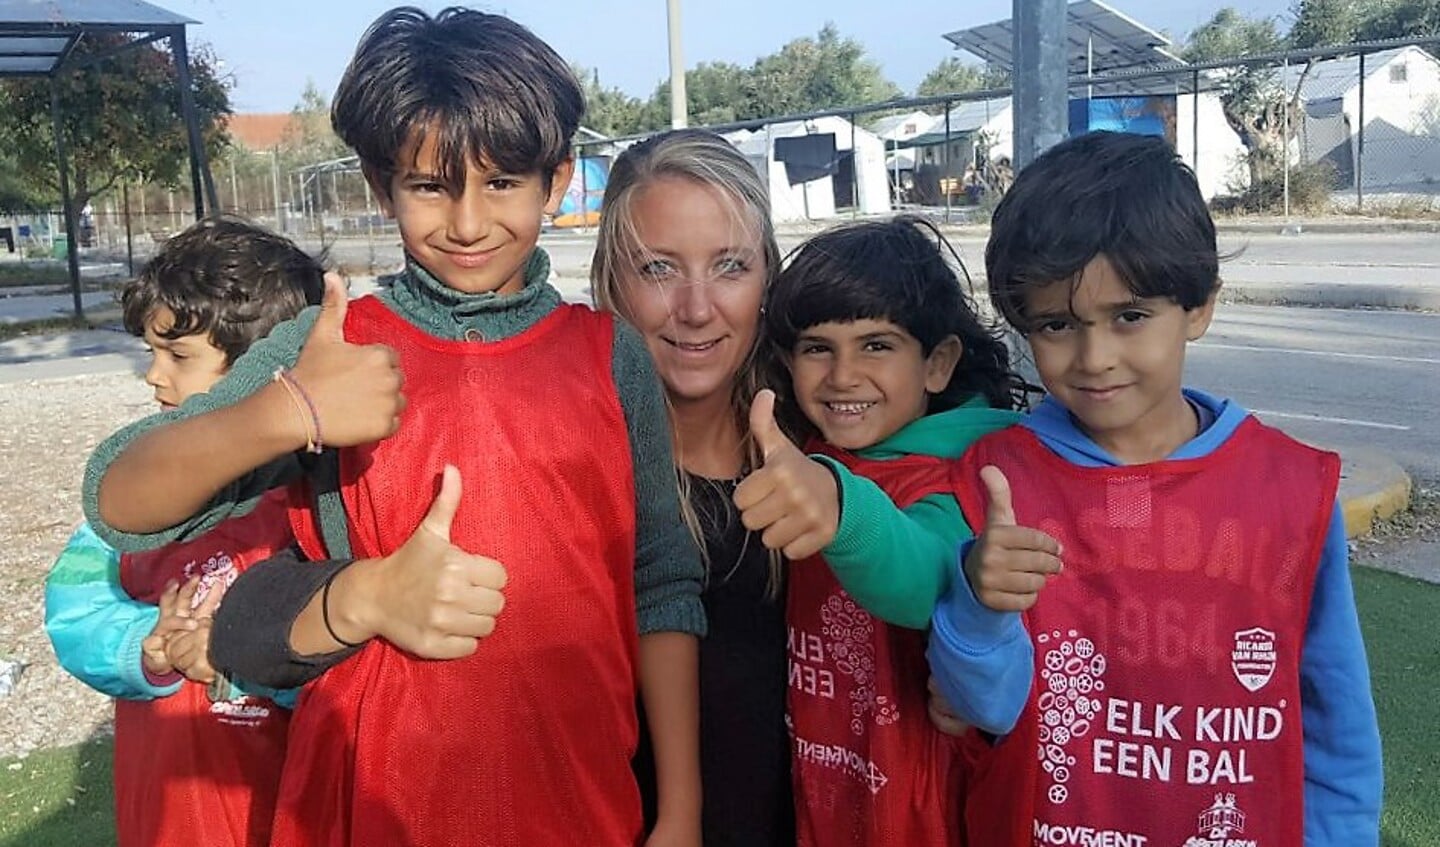 Jolijn van der Laaken helpt vluchtelingen in Lesbos. | Foto: pr.